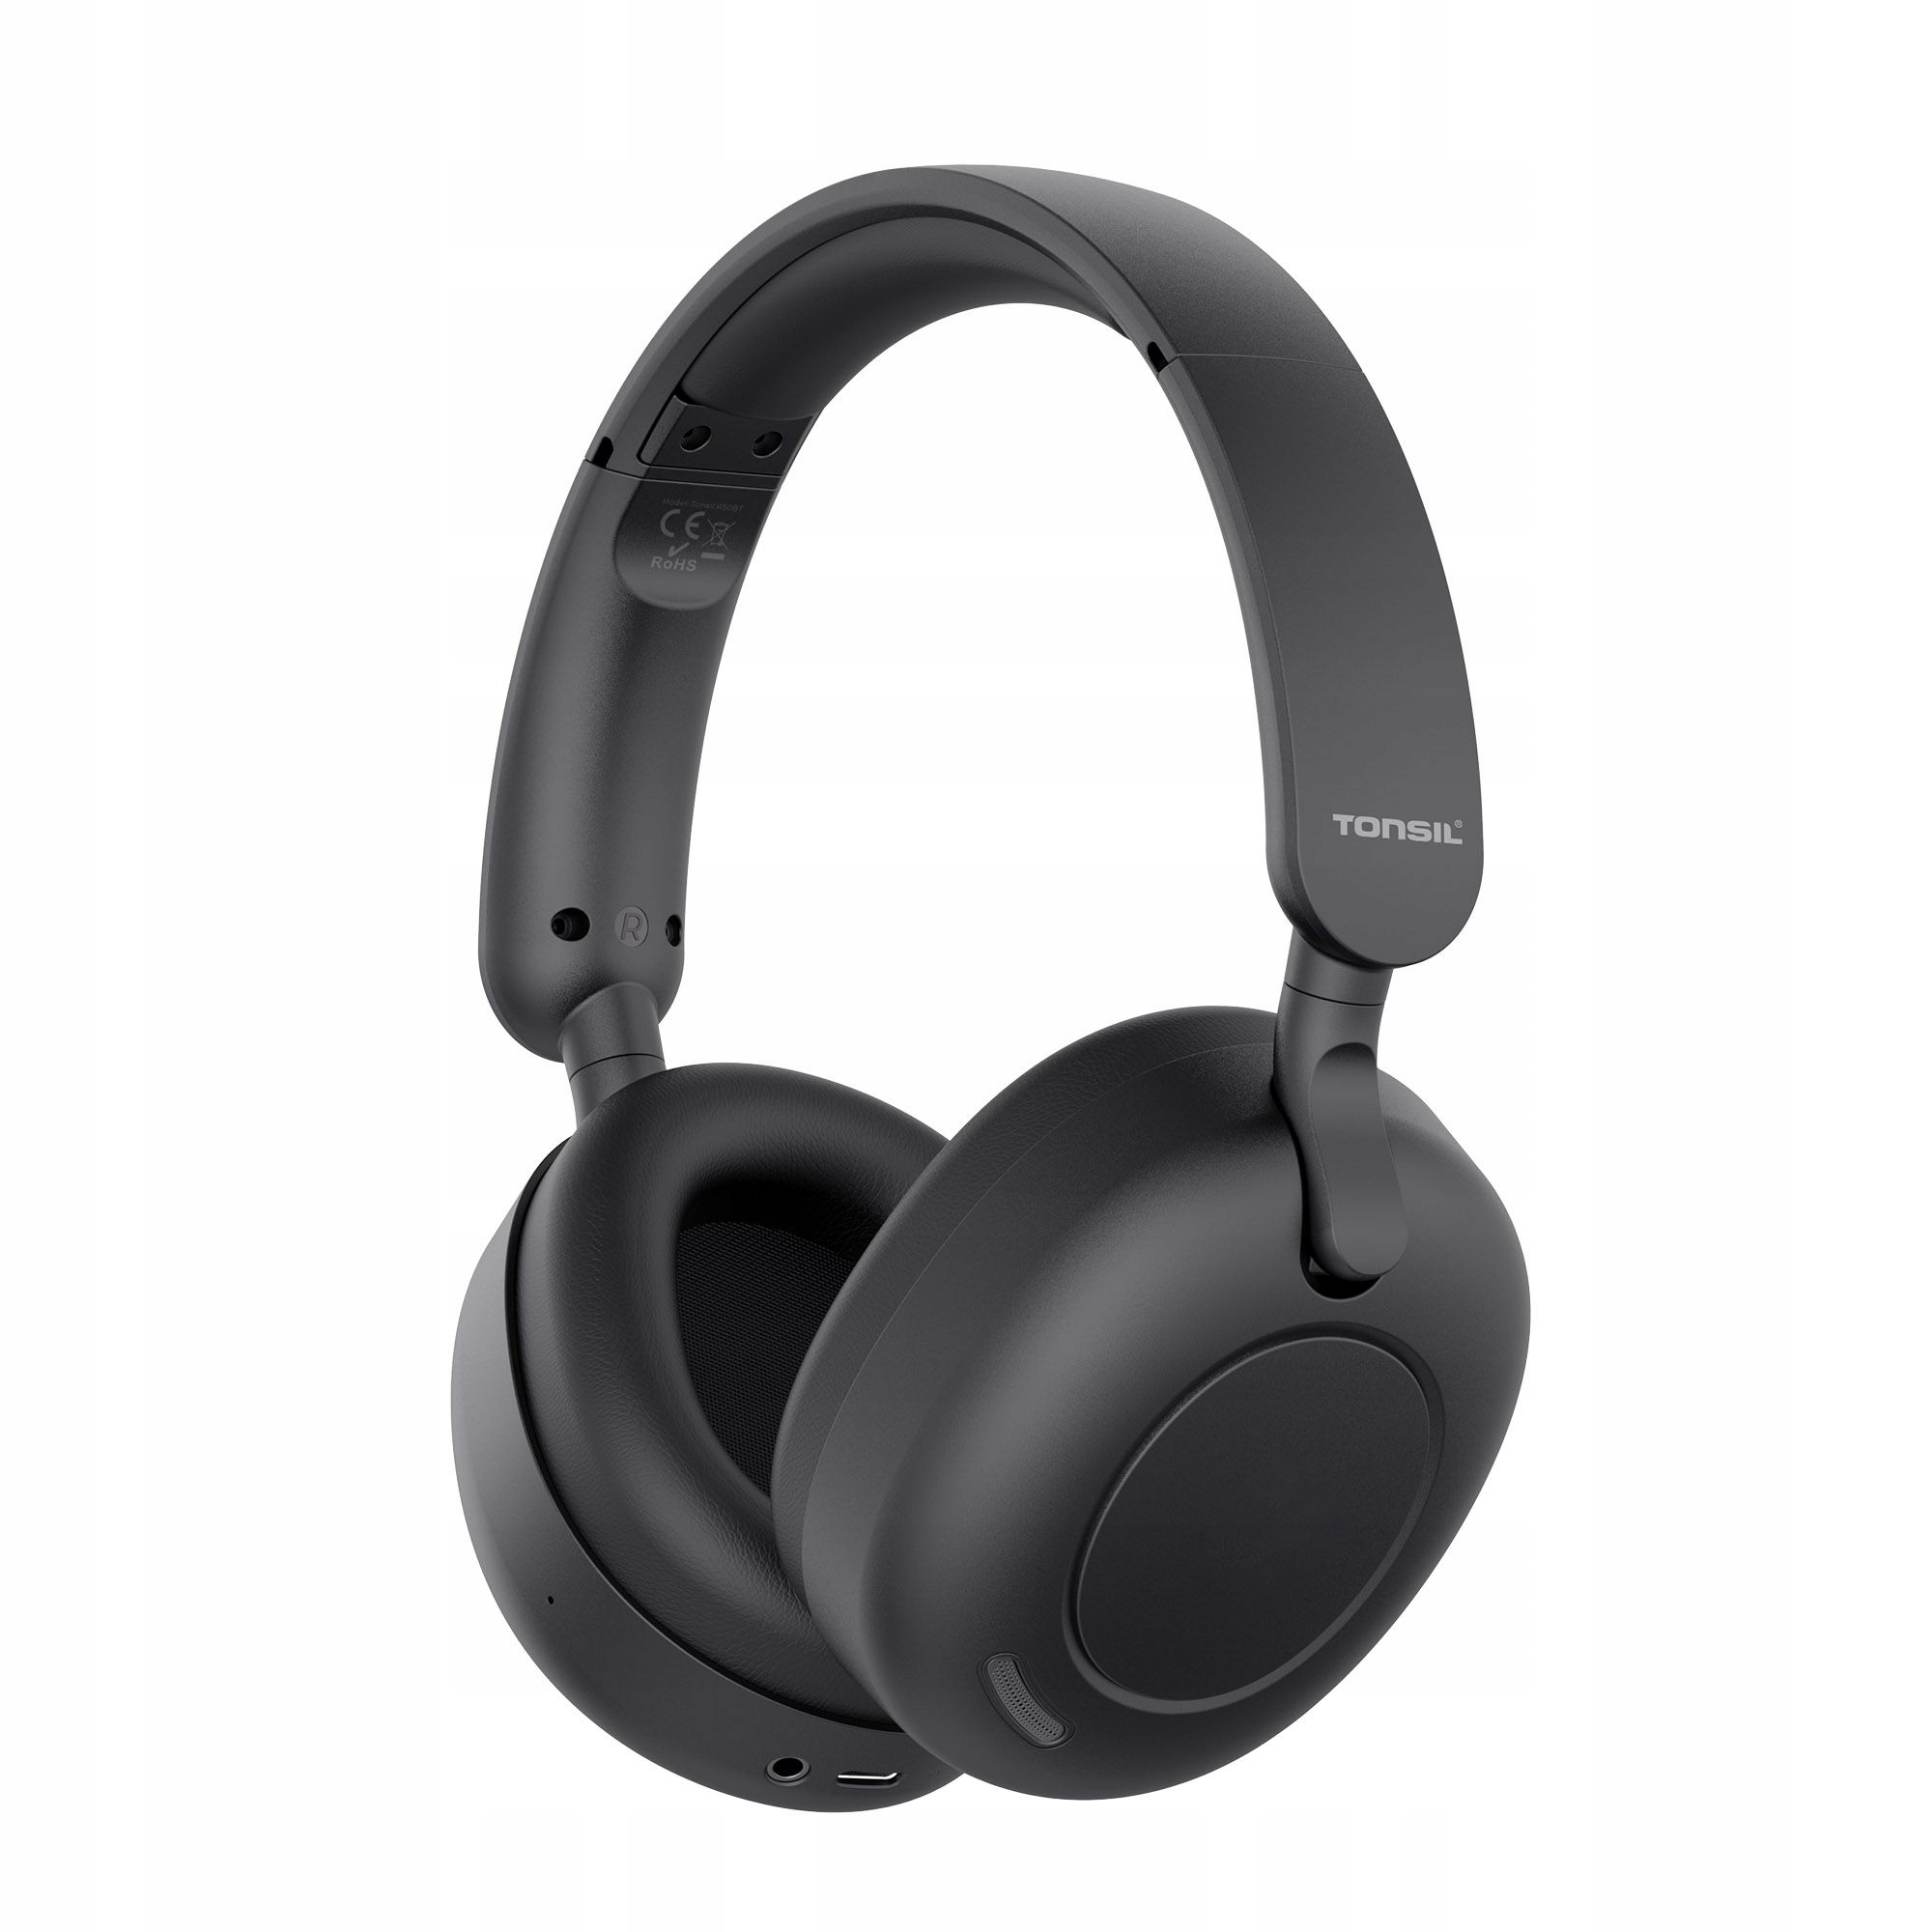 Zdjęcia - Słuchawki TONSIL  Bezprzewodowe  R50BT Hybrydowe Anc Nauszne Bluetooth Czarn 